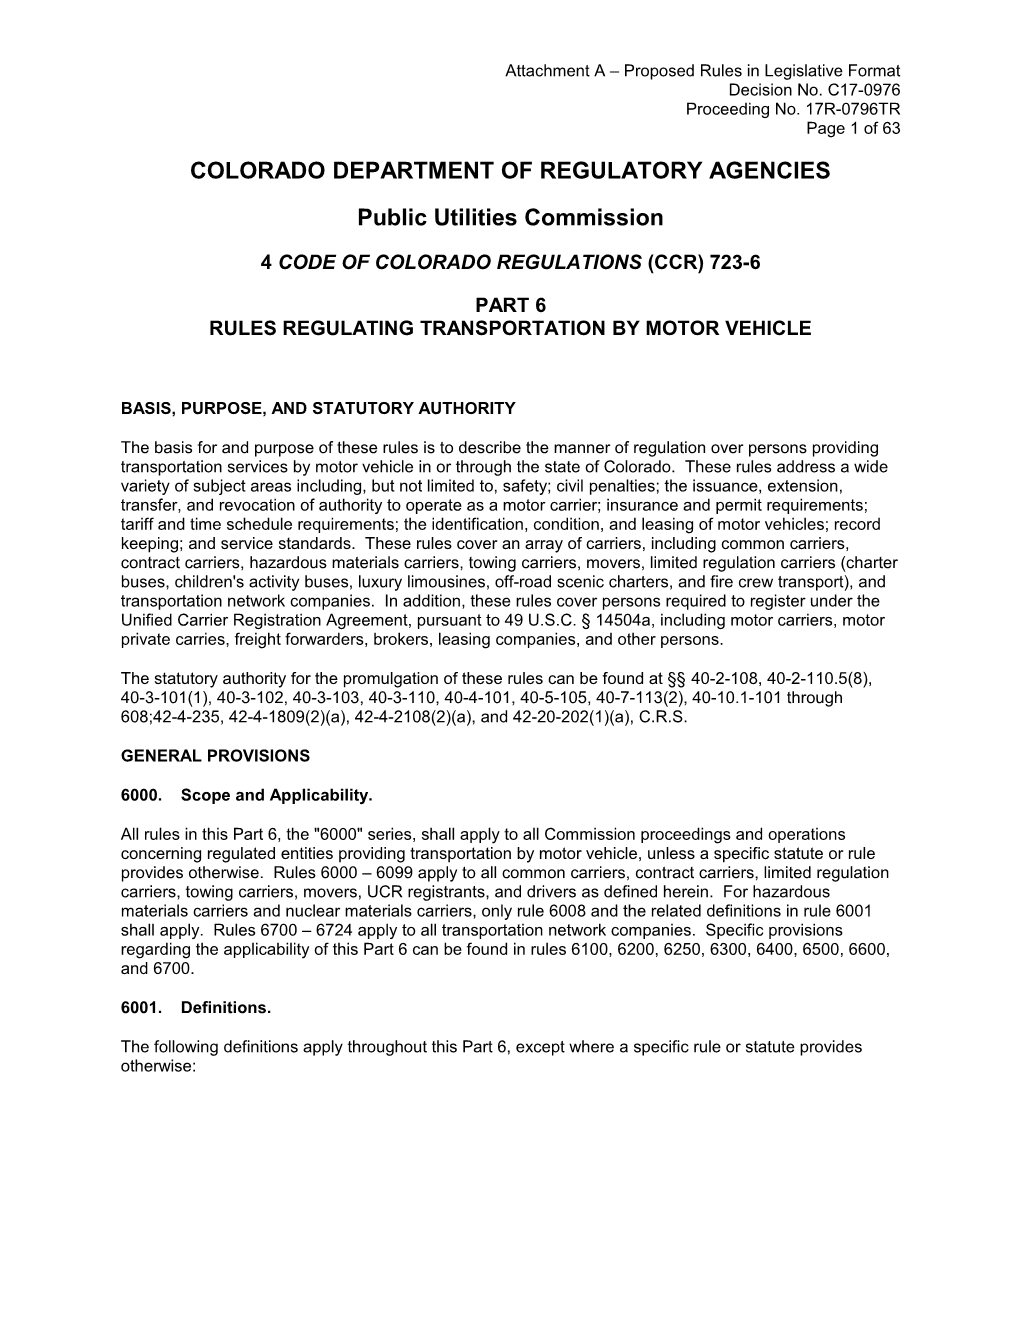 Colorado Department of Regulatory Agencies s6